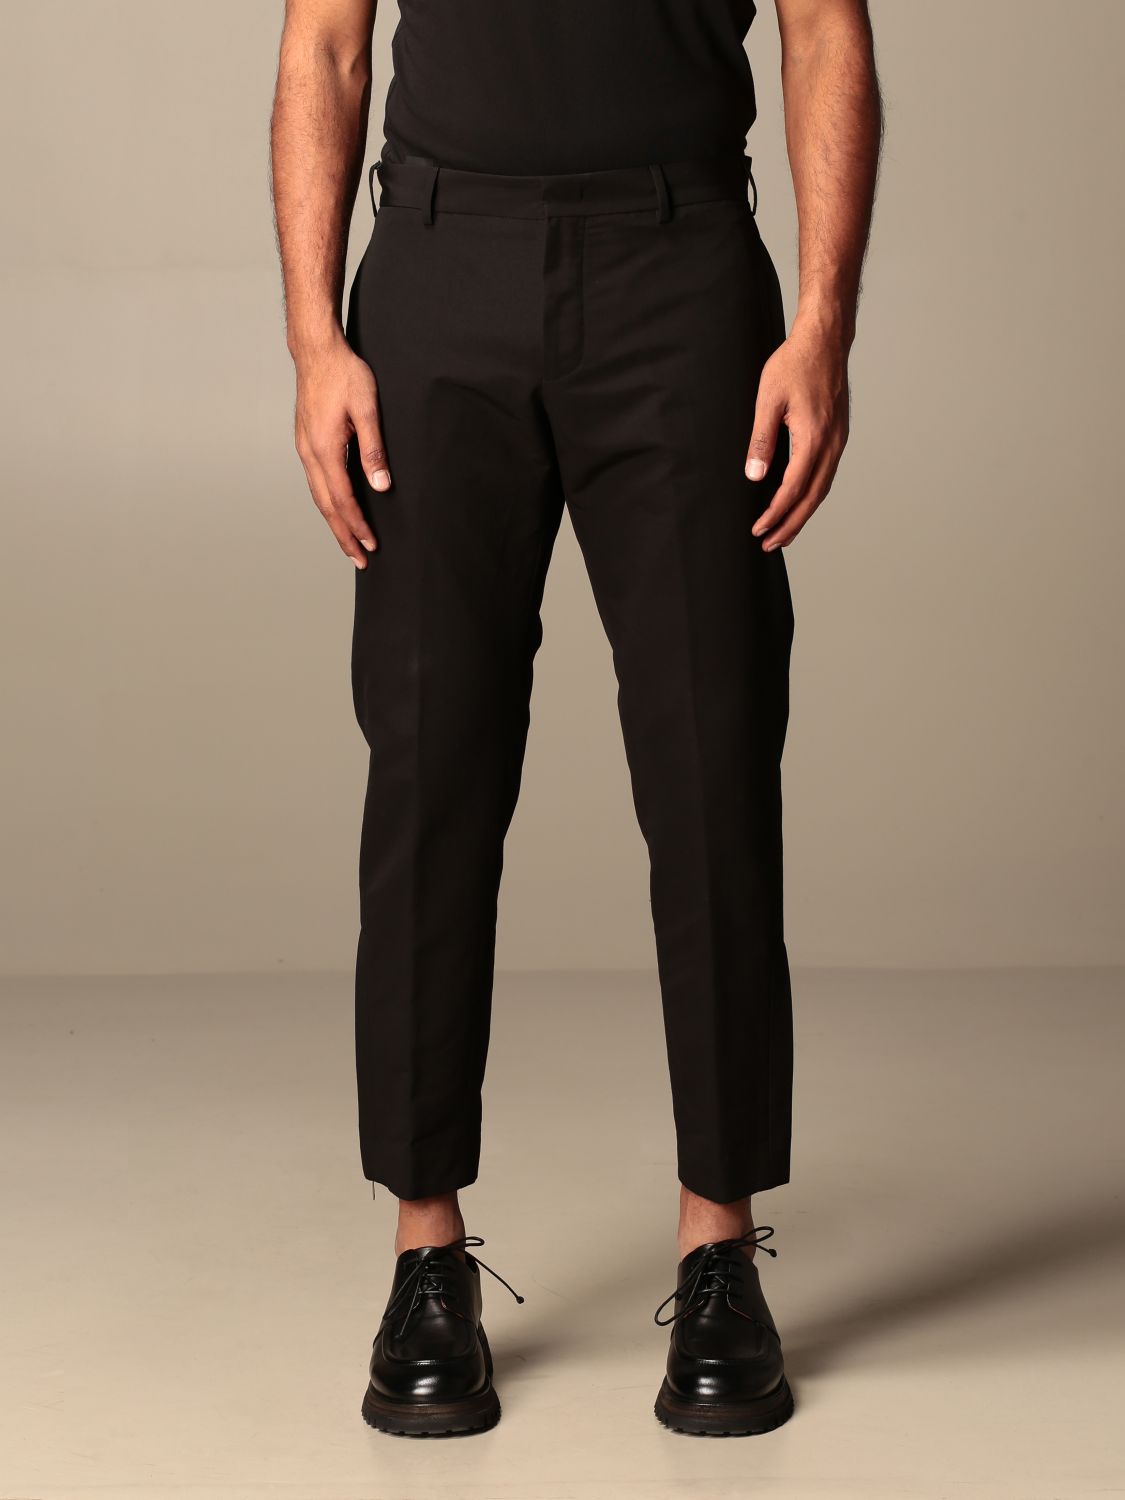 Pt Torino Outlet: Classic trousers Pt - Black | Pt Torino pants ...